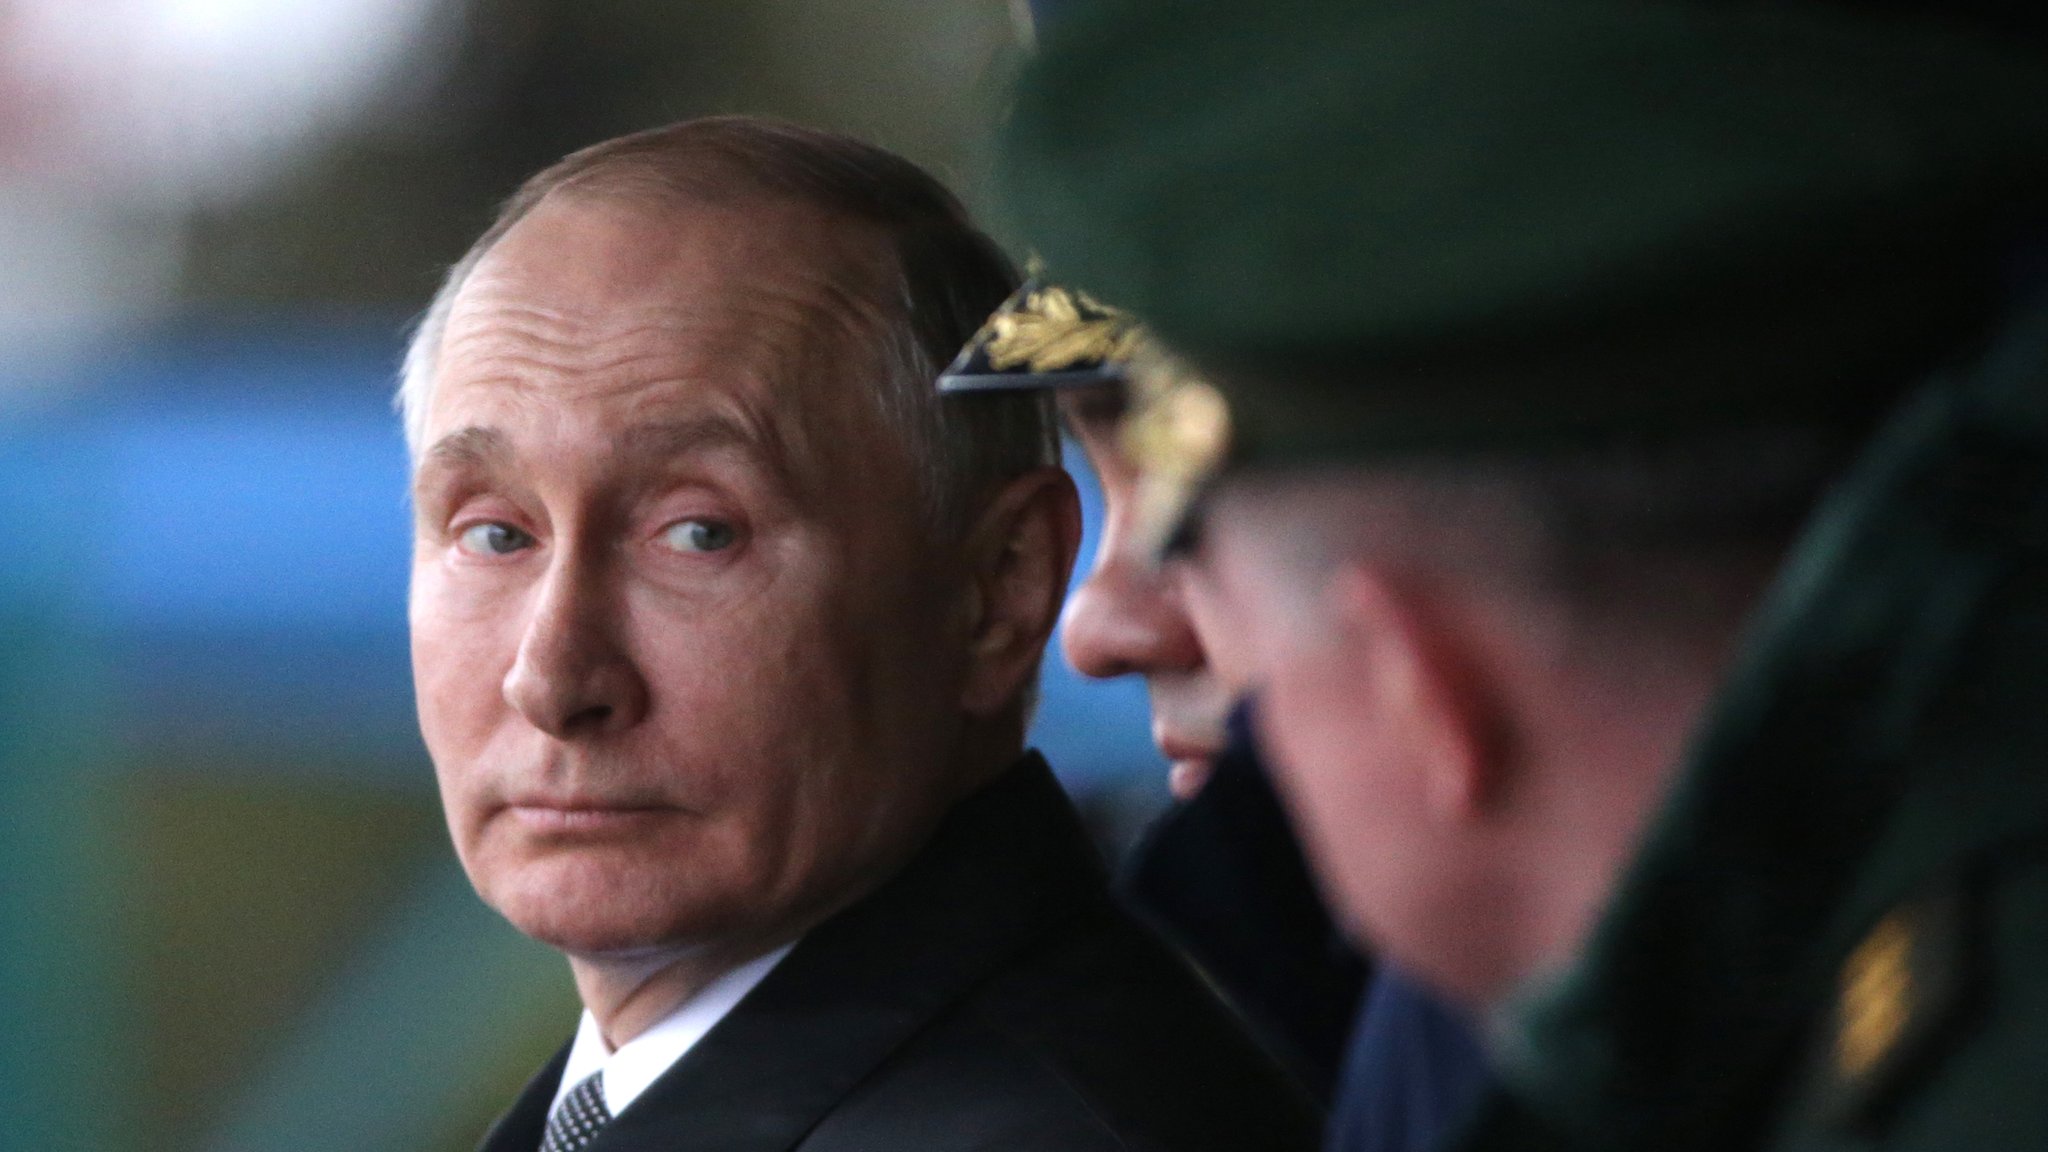 ABD istihbaratından Putin açıklaması: Suikasttan kurtuldu, kanser tedavisi gördü